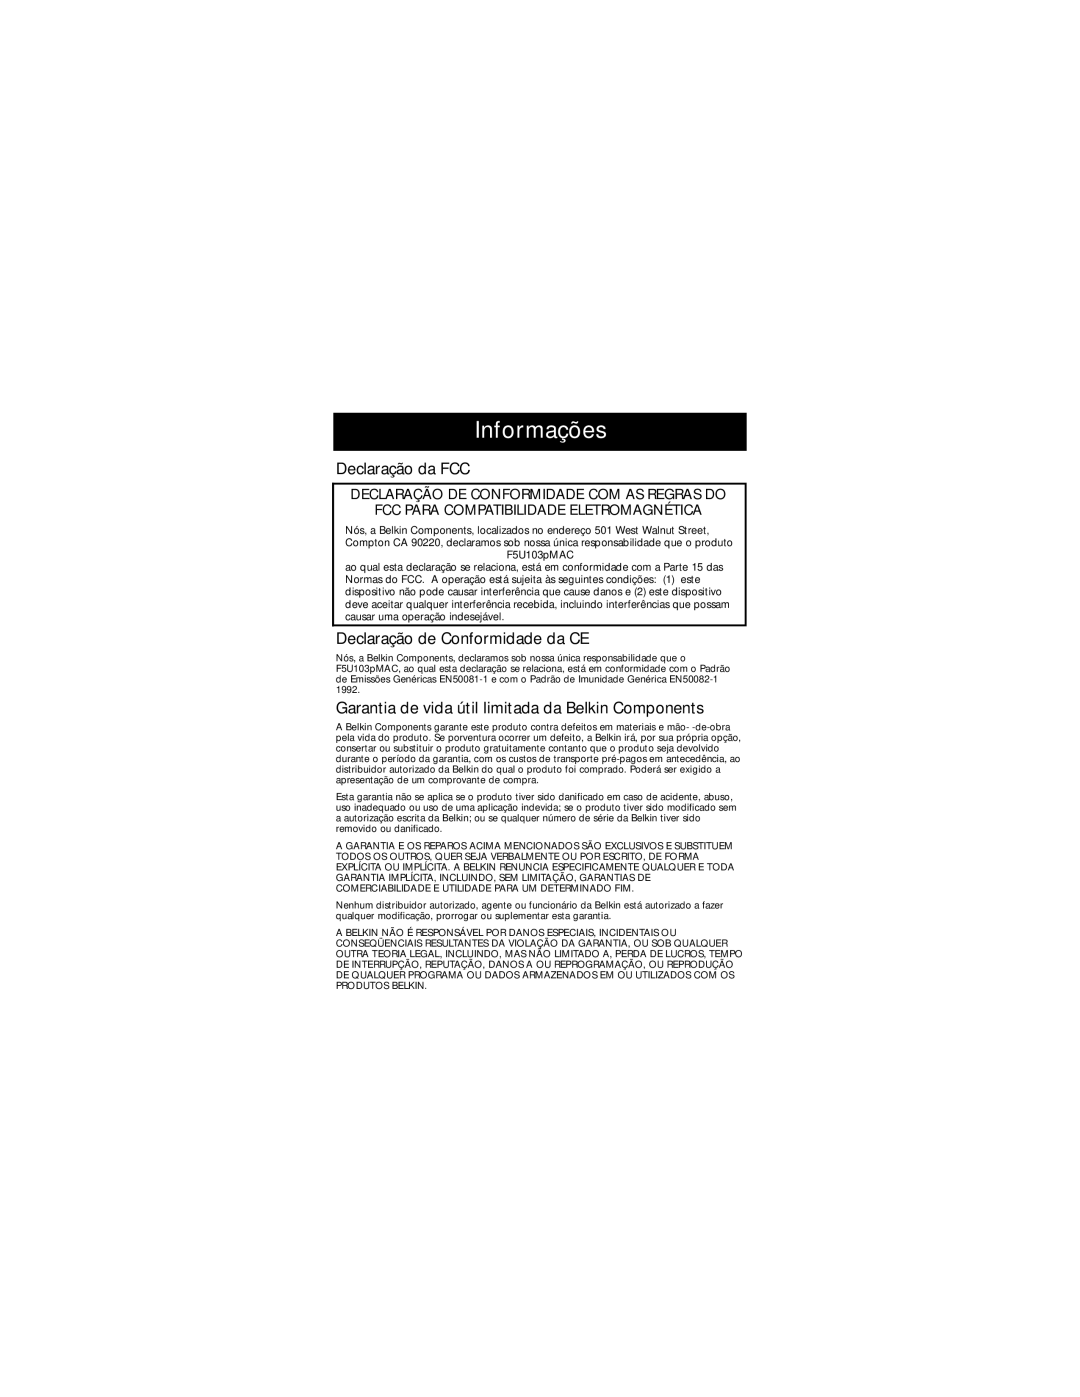 Belkin F5U114-MAC user manual Informações, Declaração da FCC, Declaração de Conformidade da CE 